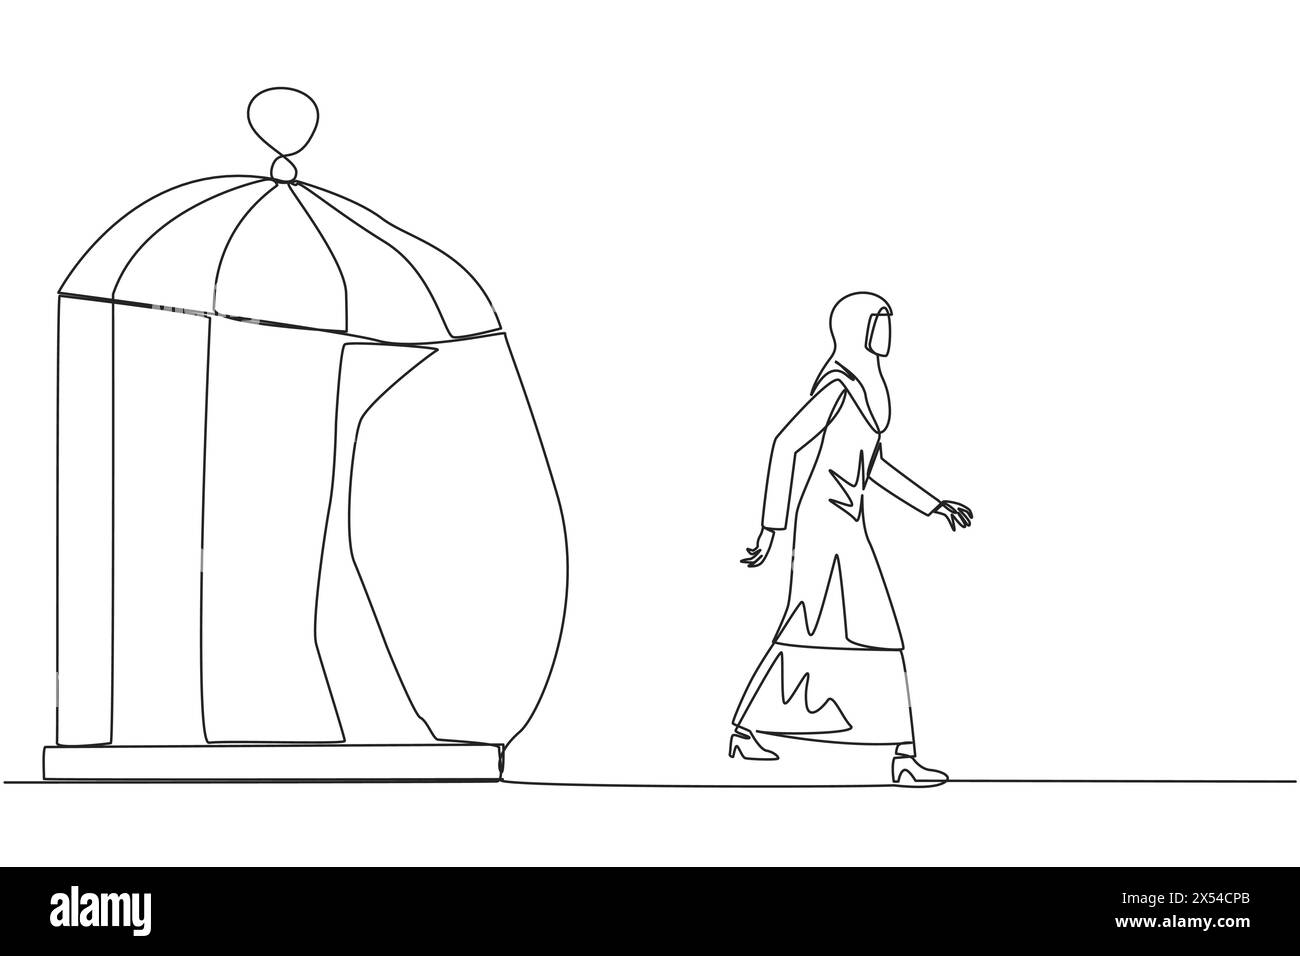 Una linea continua che attira una donna d'affari araba intrappolata nella gabbia e che cammina penetra nella gabbia. Metafora alla ricerca di nuove sfide ed esperienze per la scommessa Illustrazione Vettoriale